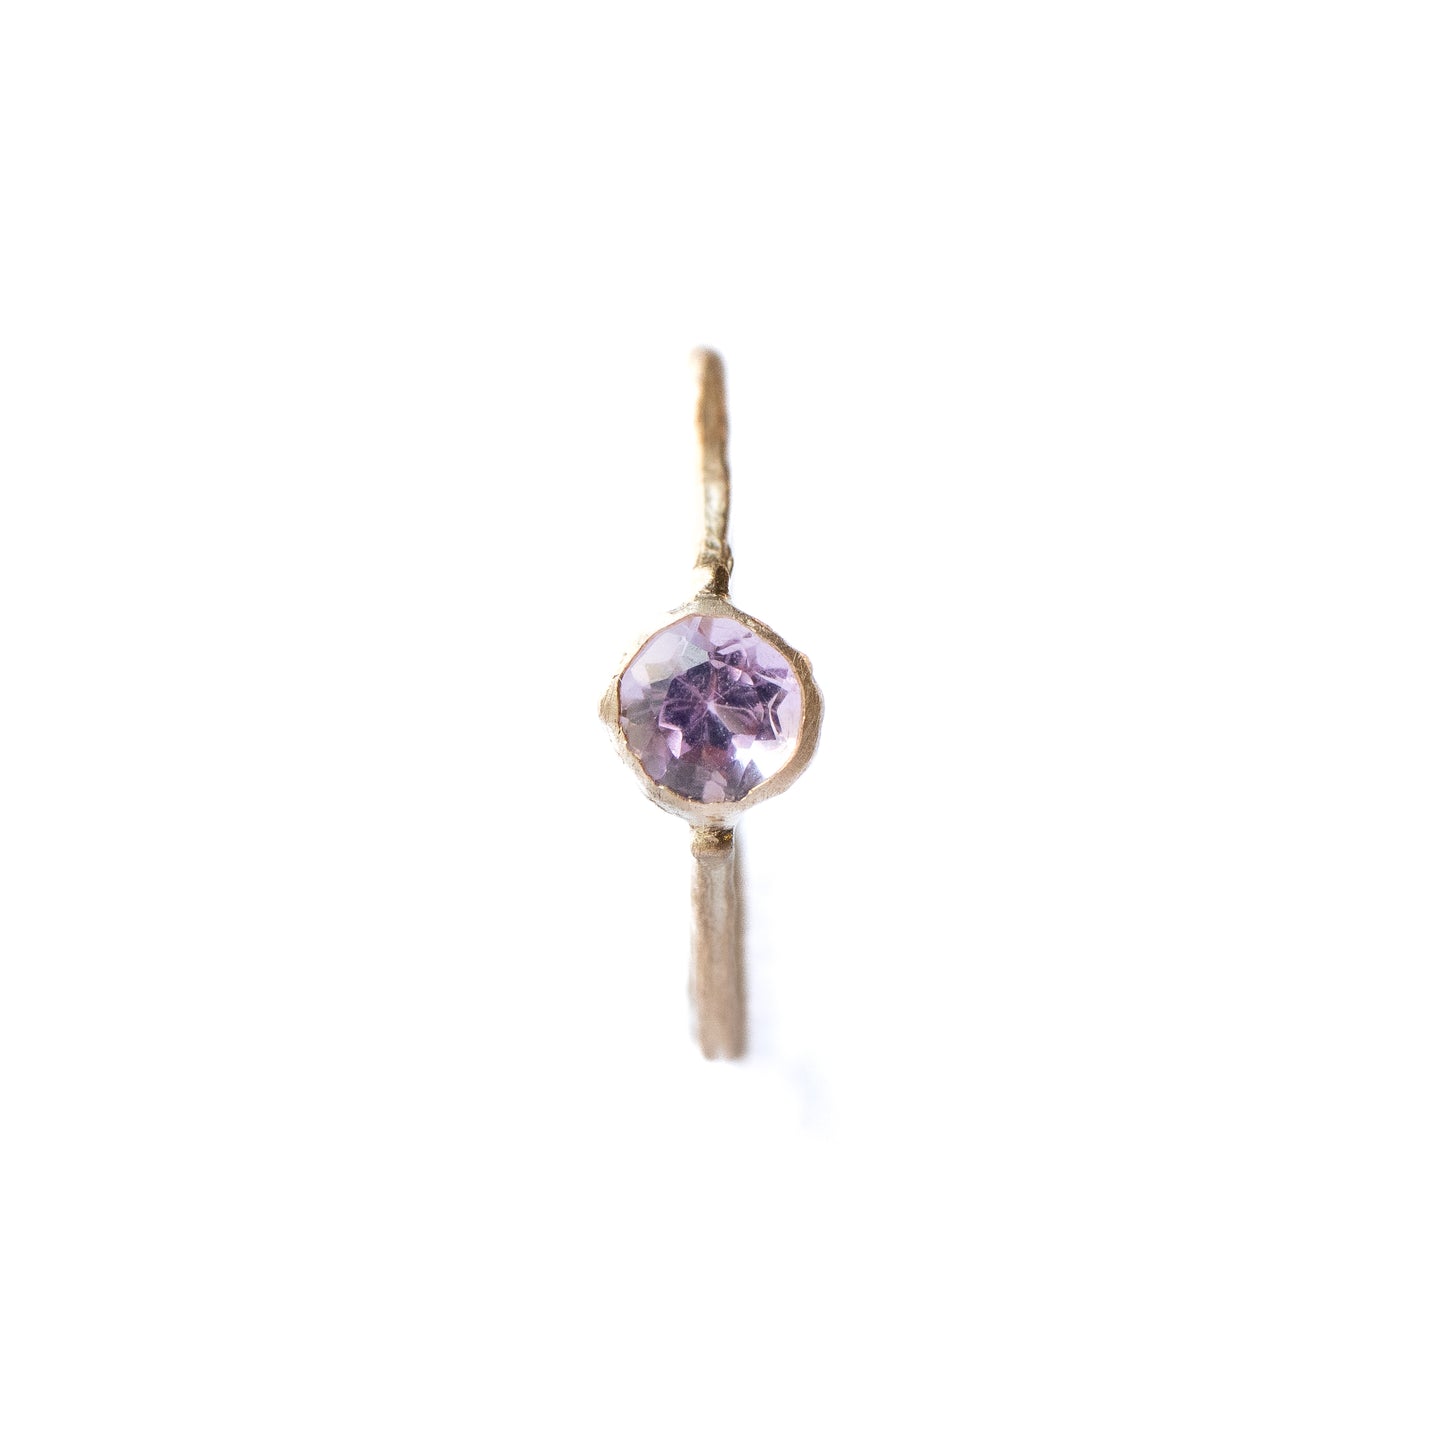 粗制 Collet 耳夹 - 紫水晶 -